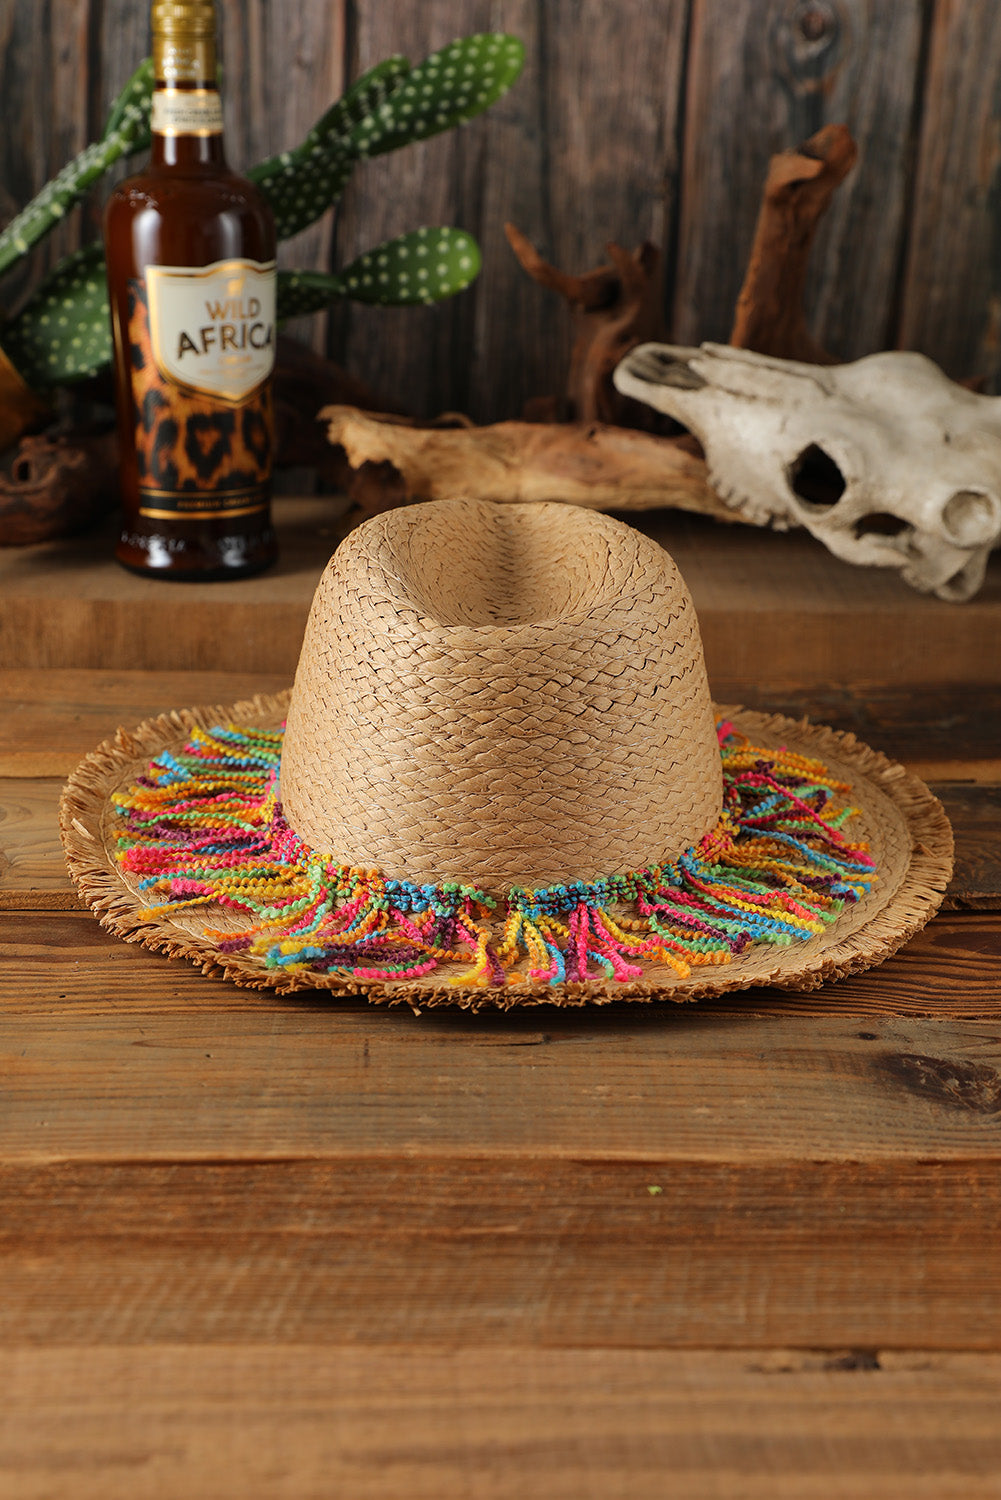 Khaki Straw Braid Fringe Beach Hat Hats & Caps JT's Designer Fashion